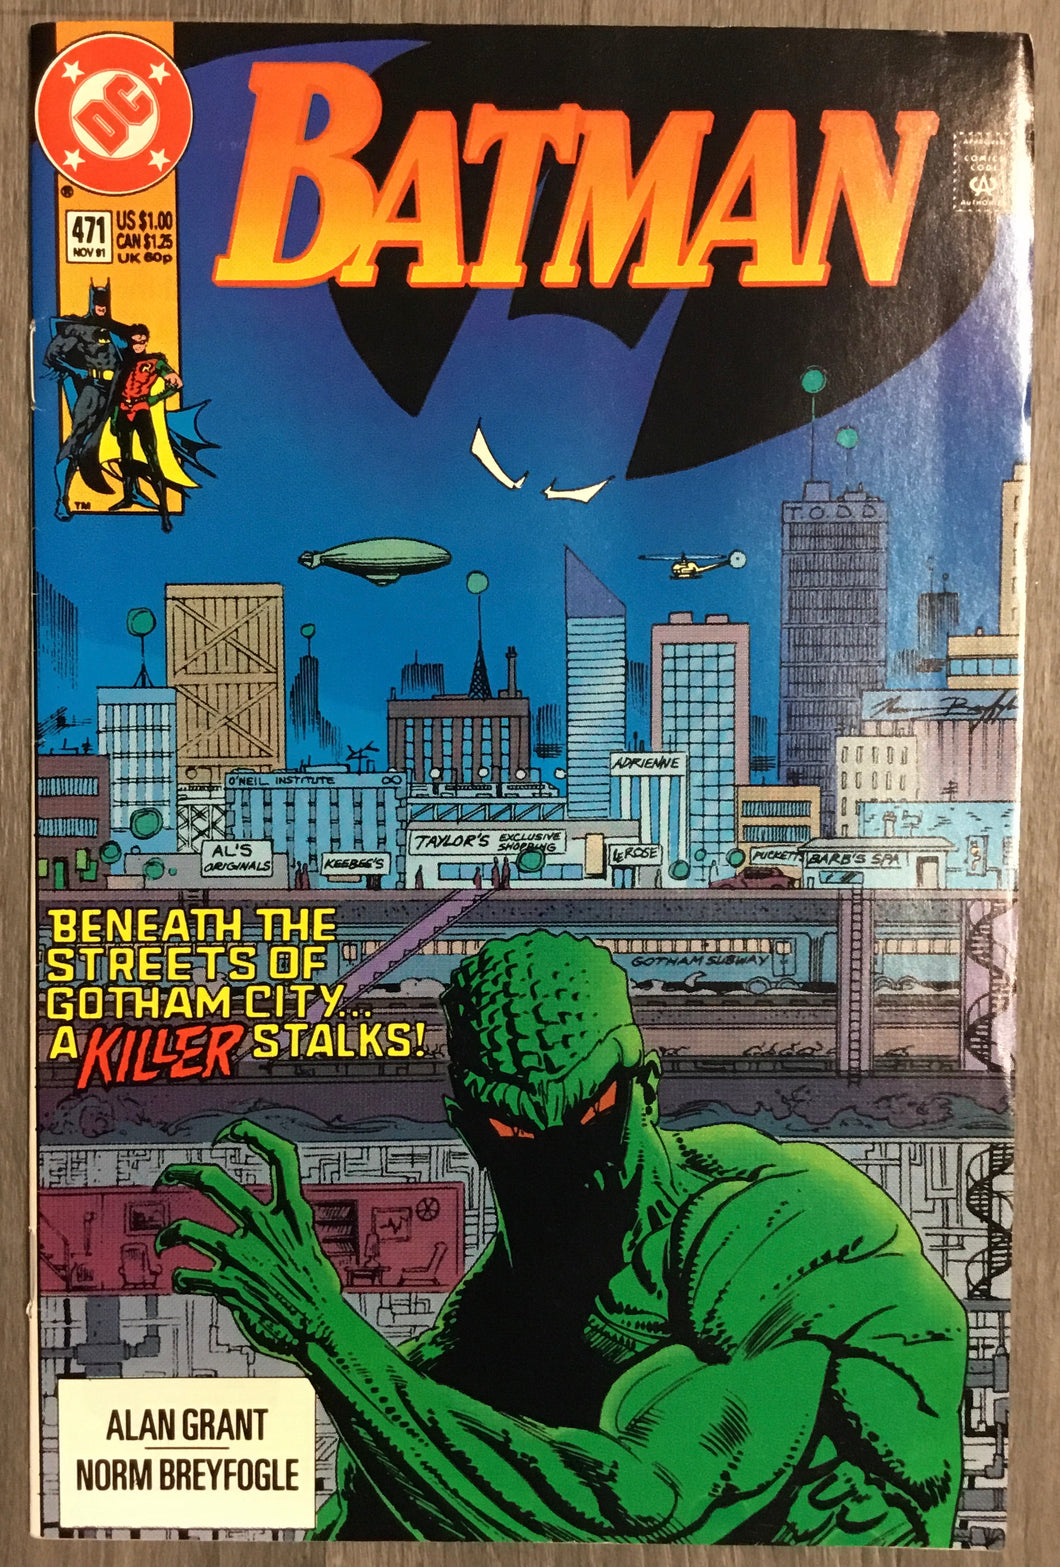 Batman No. #471 1991 DC Comics